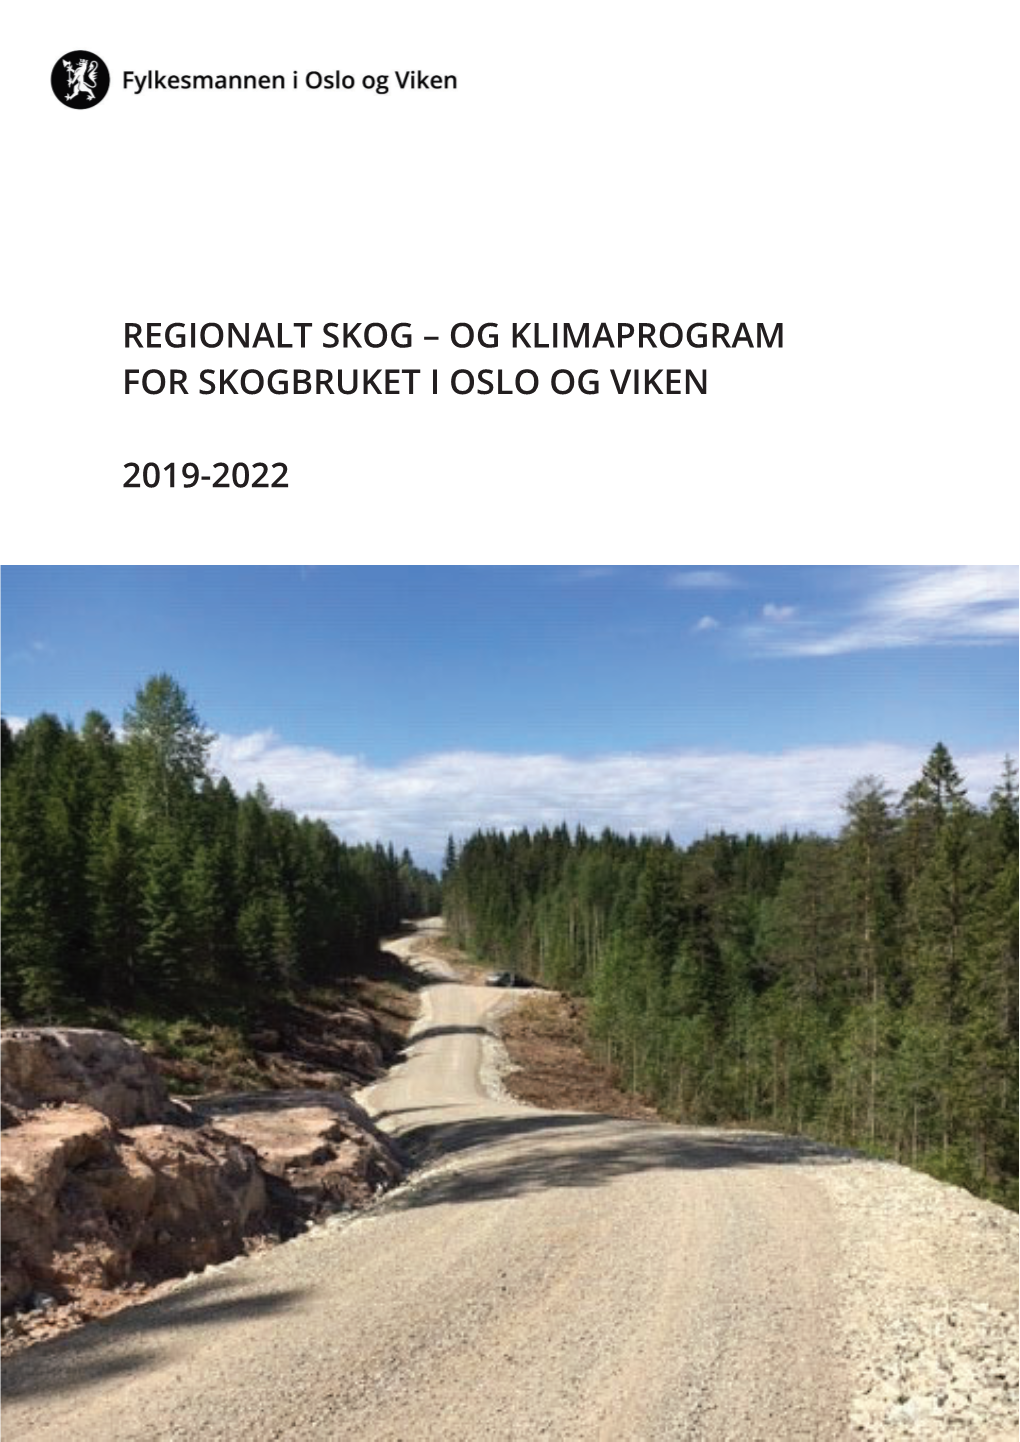 Regionalt Skog- Og Klimaprogram for Oslo Og Viken 2019-2022 (RSK)